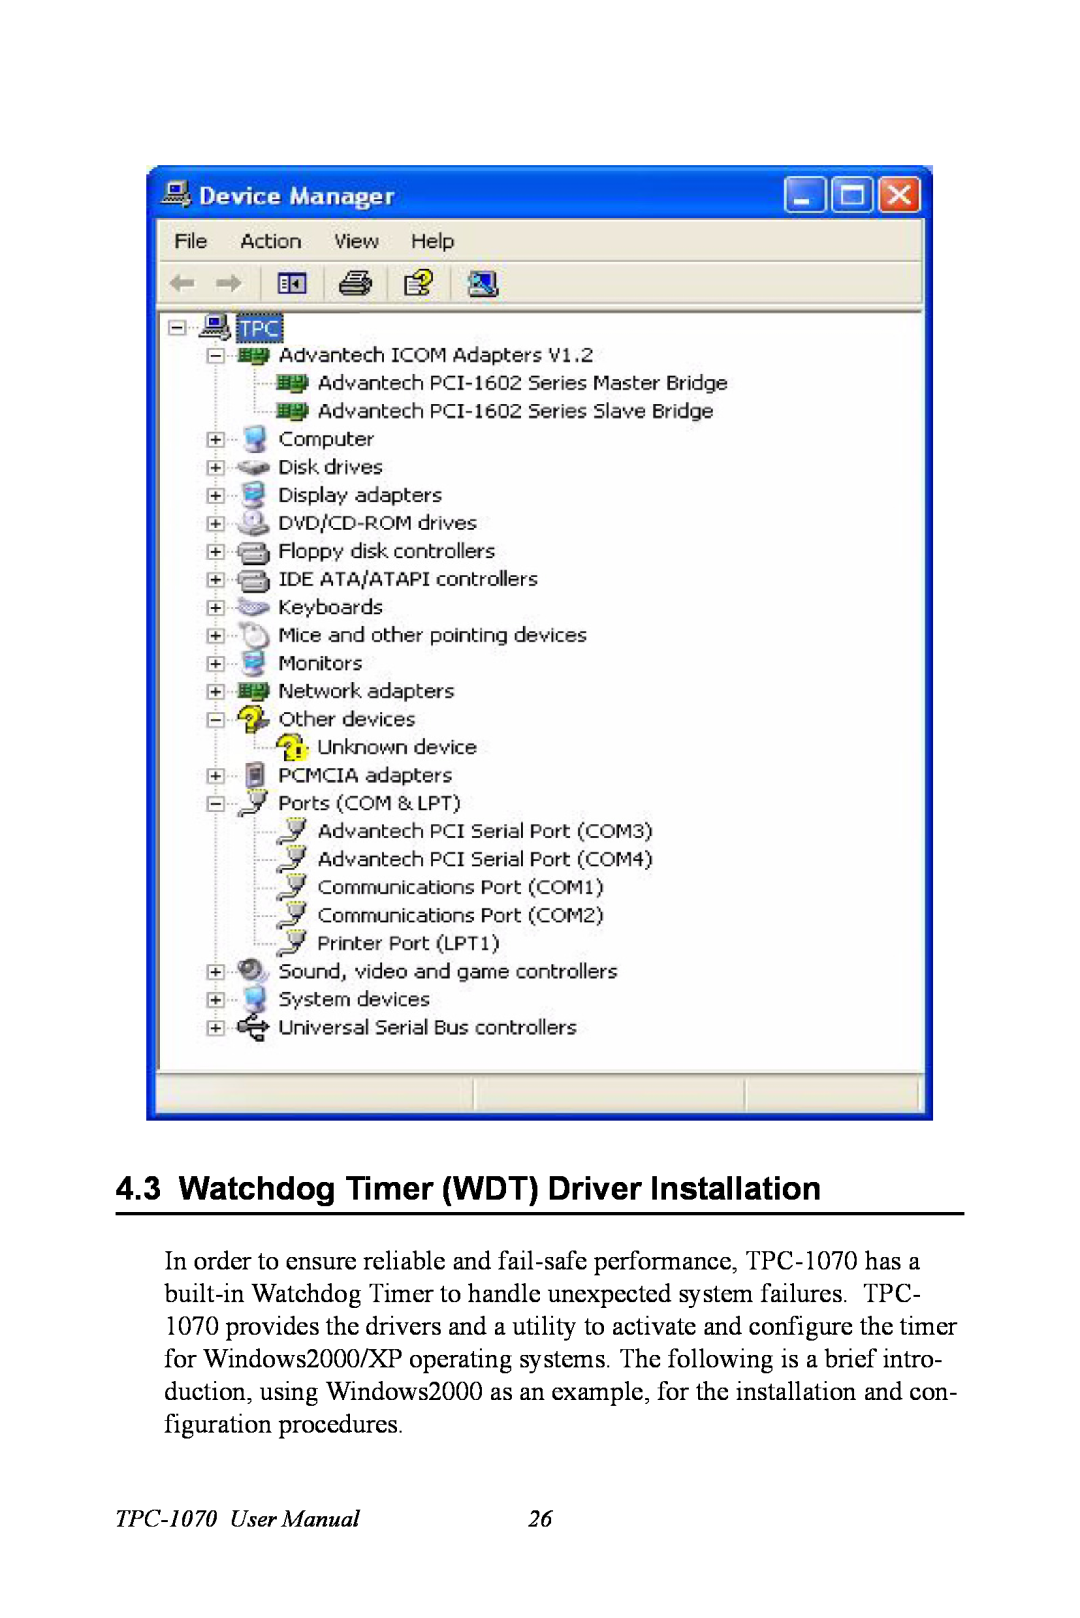 Intel TPC-1070 user manual Watchdog Timer WDT Driver Installation 